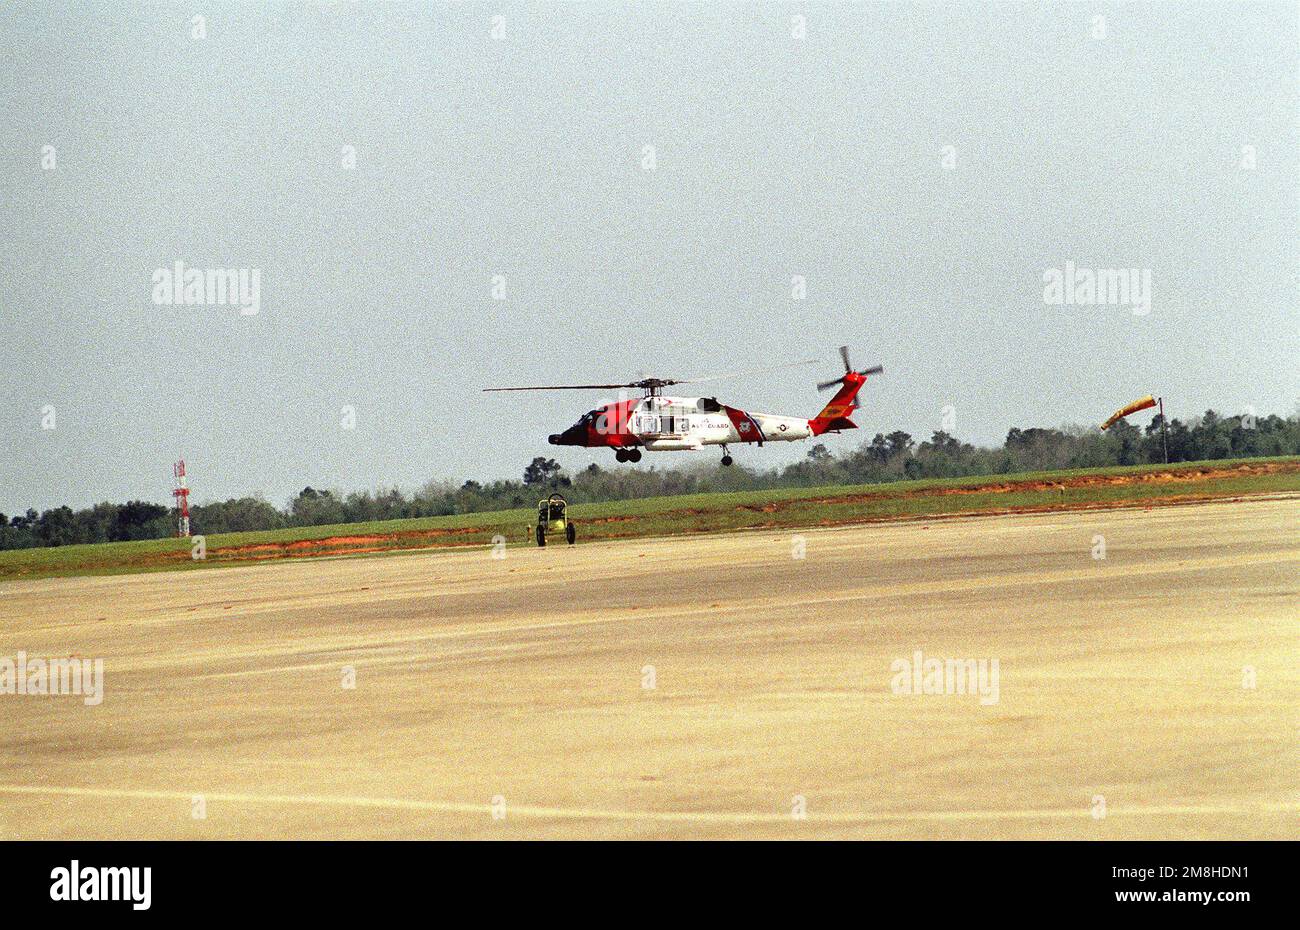 Un hélicoptère Jayhawk HH-60J de la Garde côtière survole la ligne de vol lors d'un spectacle aérien. Base: Eglin Air Force base État: Floride (FL) pays: Etats-Unis d'Amérique (USA) Banque D'Images